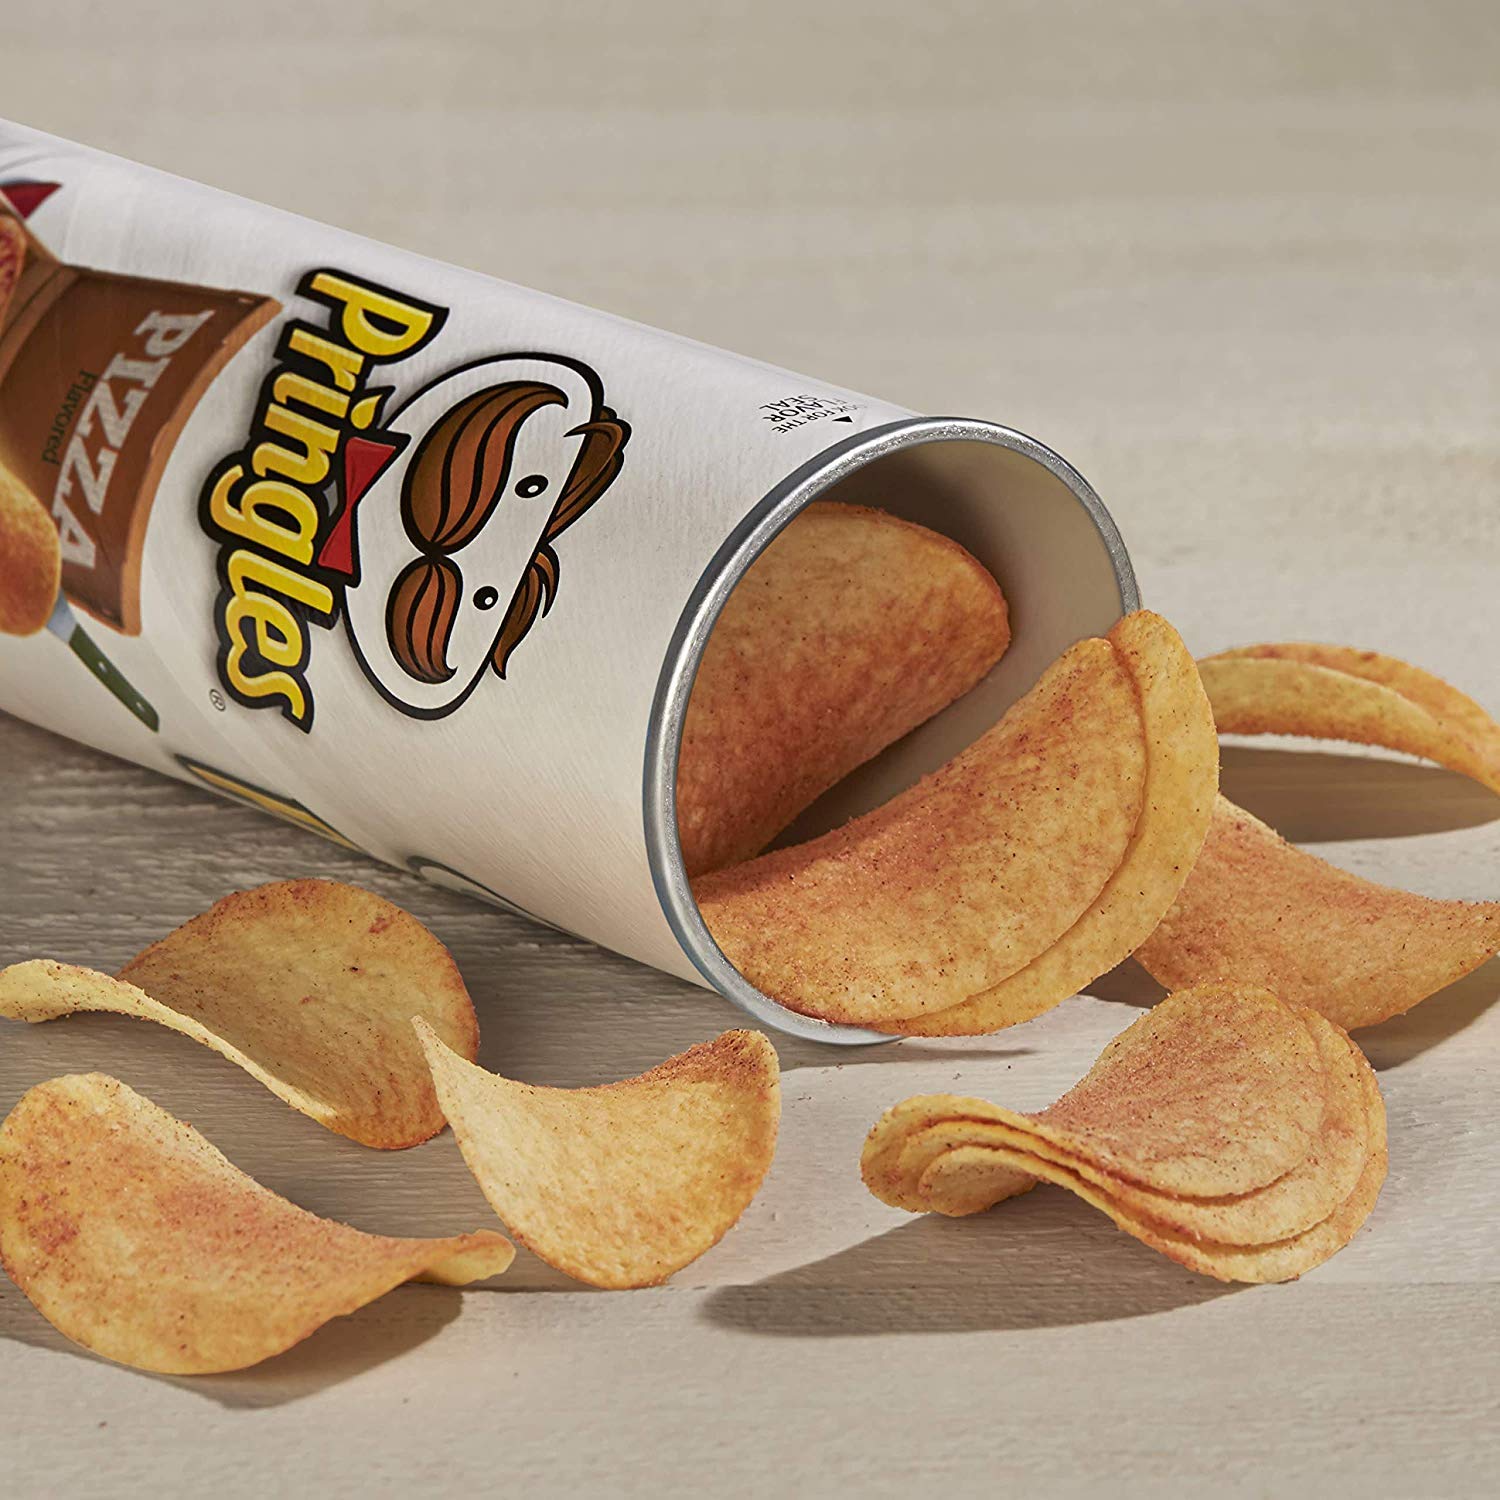 เกี่ยวกับสินค้า Pringles Potato Crisps Pizza Flavor 102g. / พริงเกิล มันฝรั่งทอดกรอบ รสพิซซ่า 102 กรัม